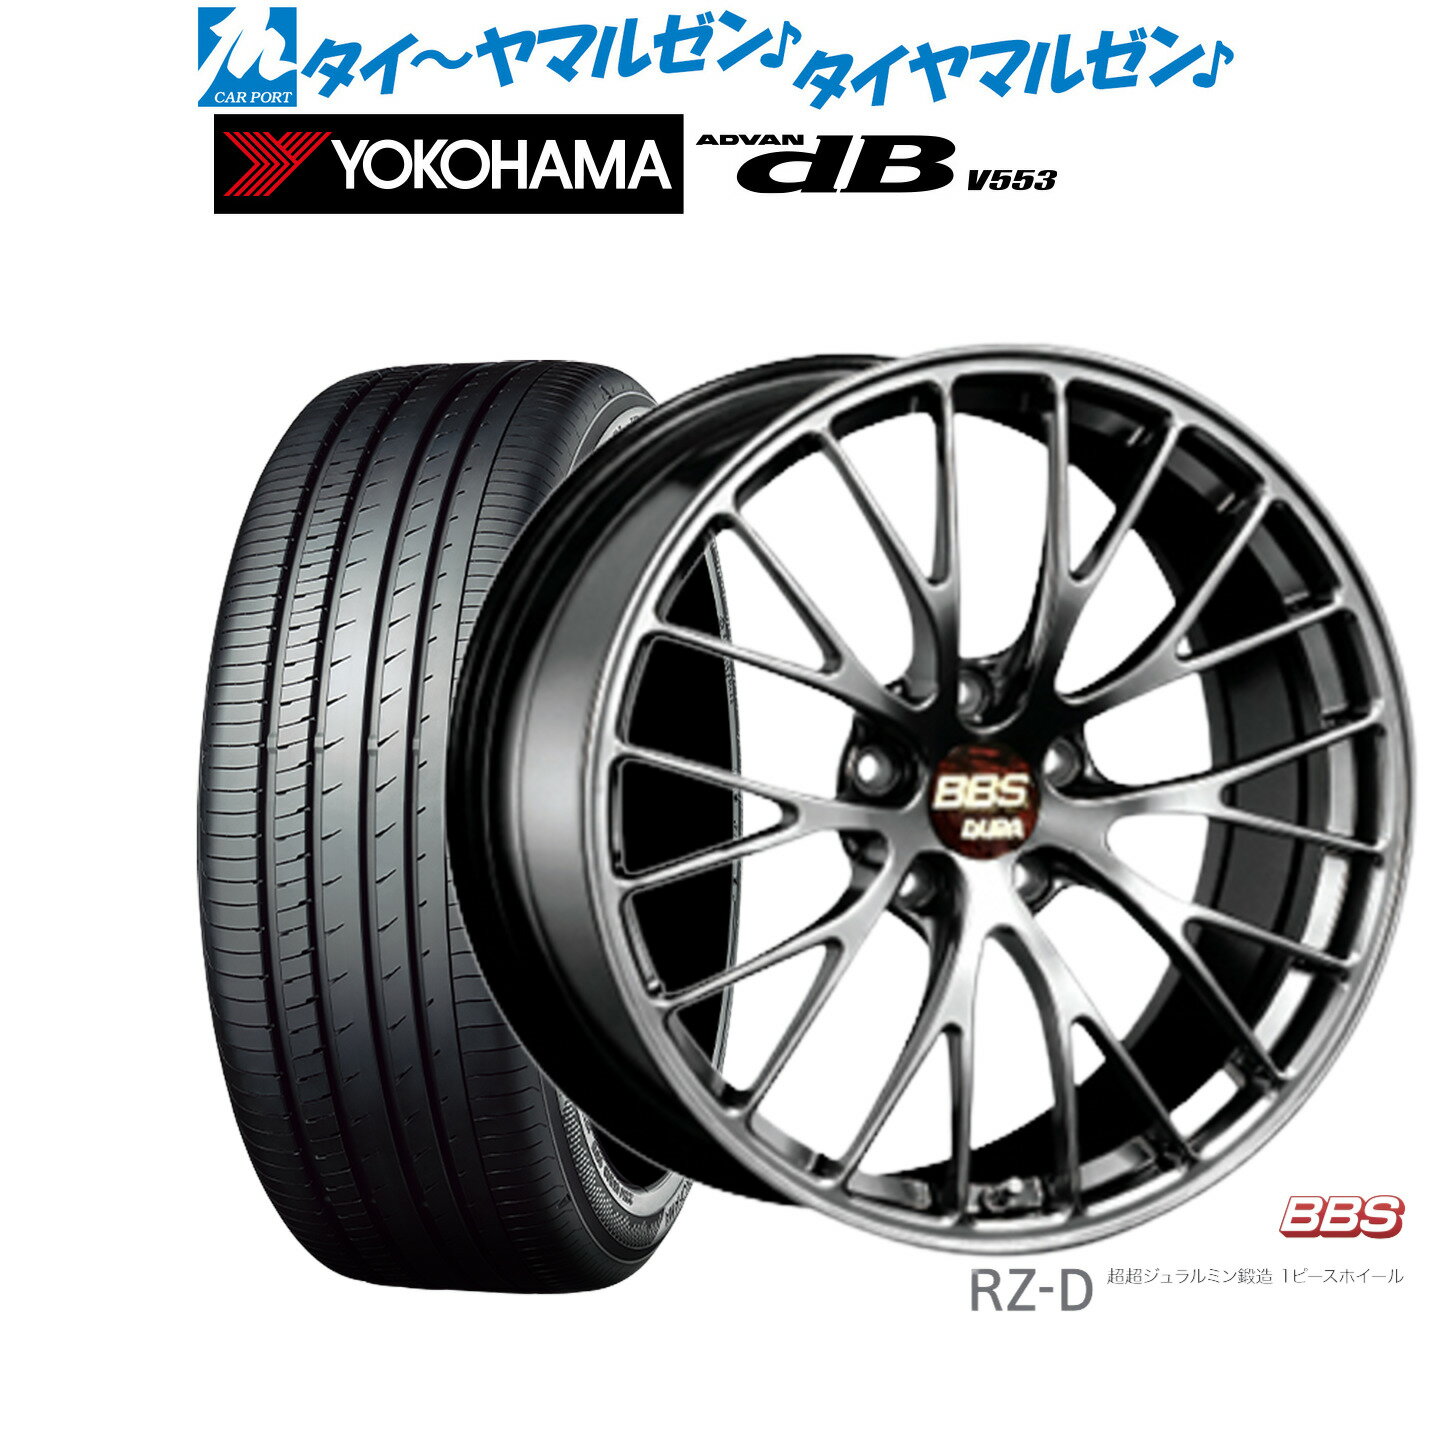 [5/20]割引クーポン配布新品 サマータイヤ ホイール4本セットBBS JAPAN RZ-D19インチ 8.5Jヨコハマ ADVAN アドバン dB(V553)245/45R19